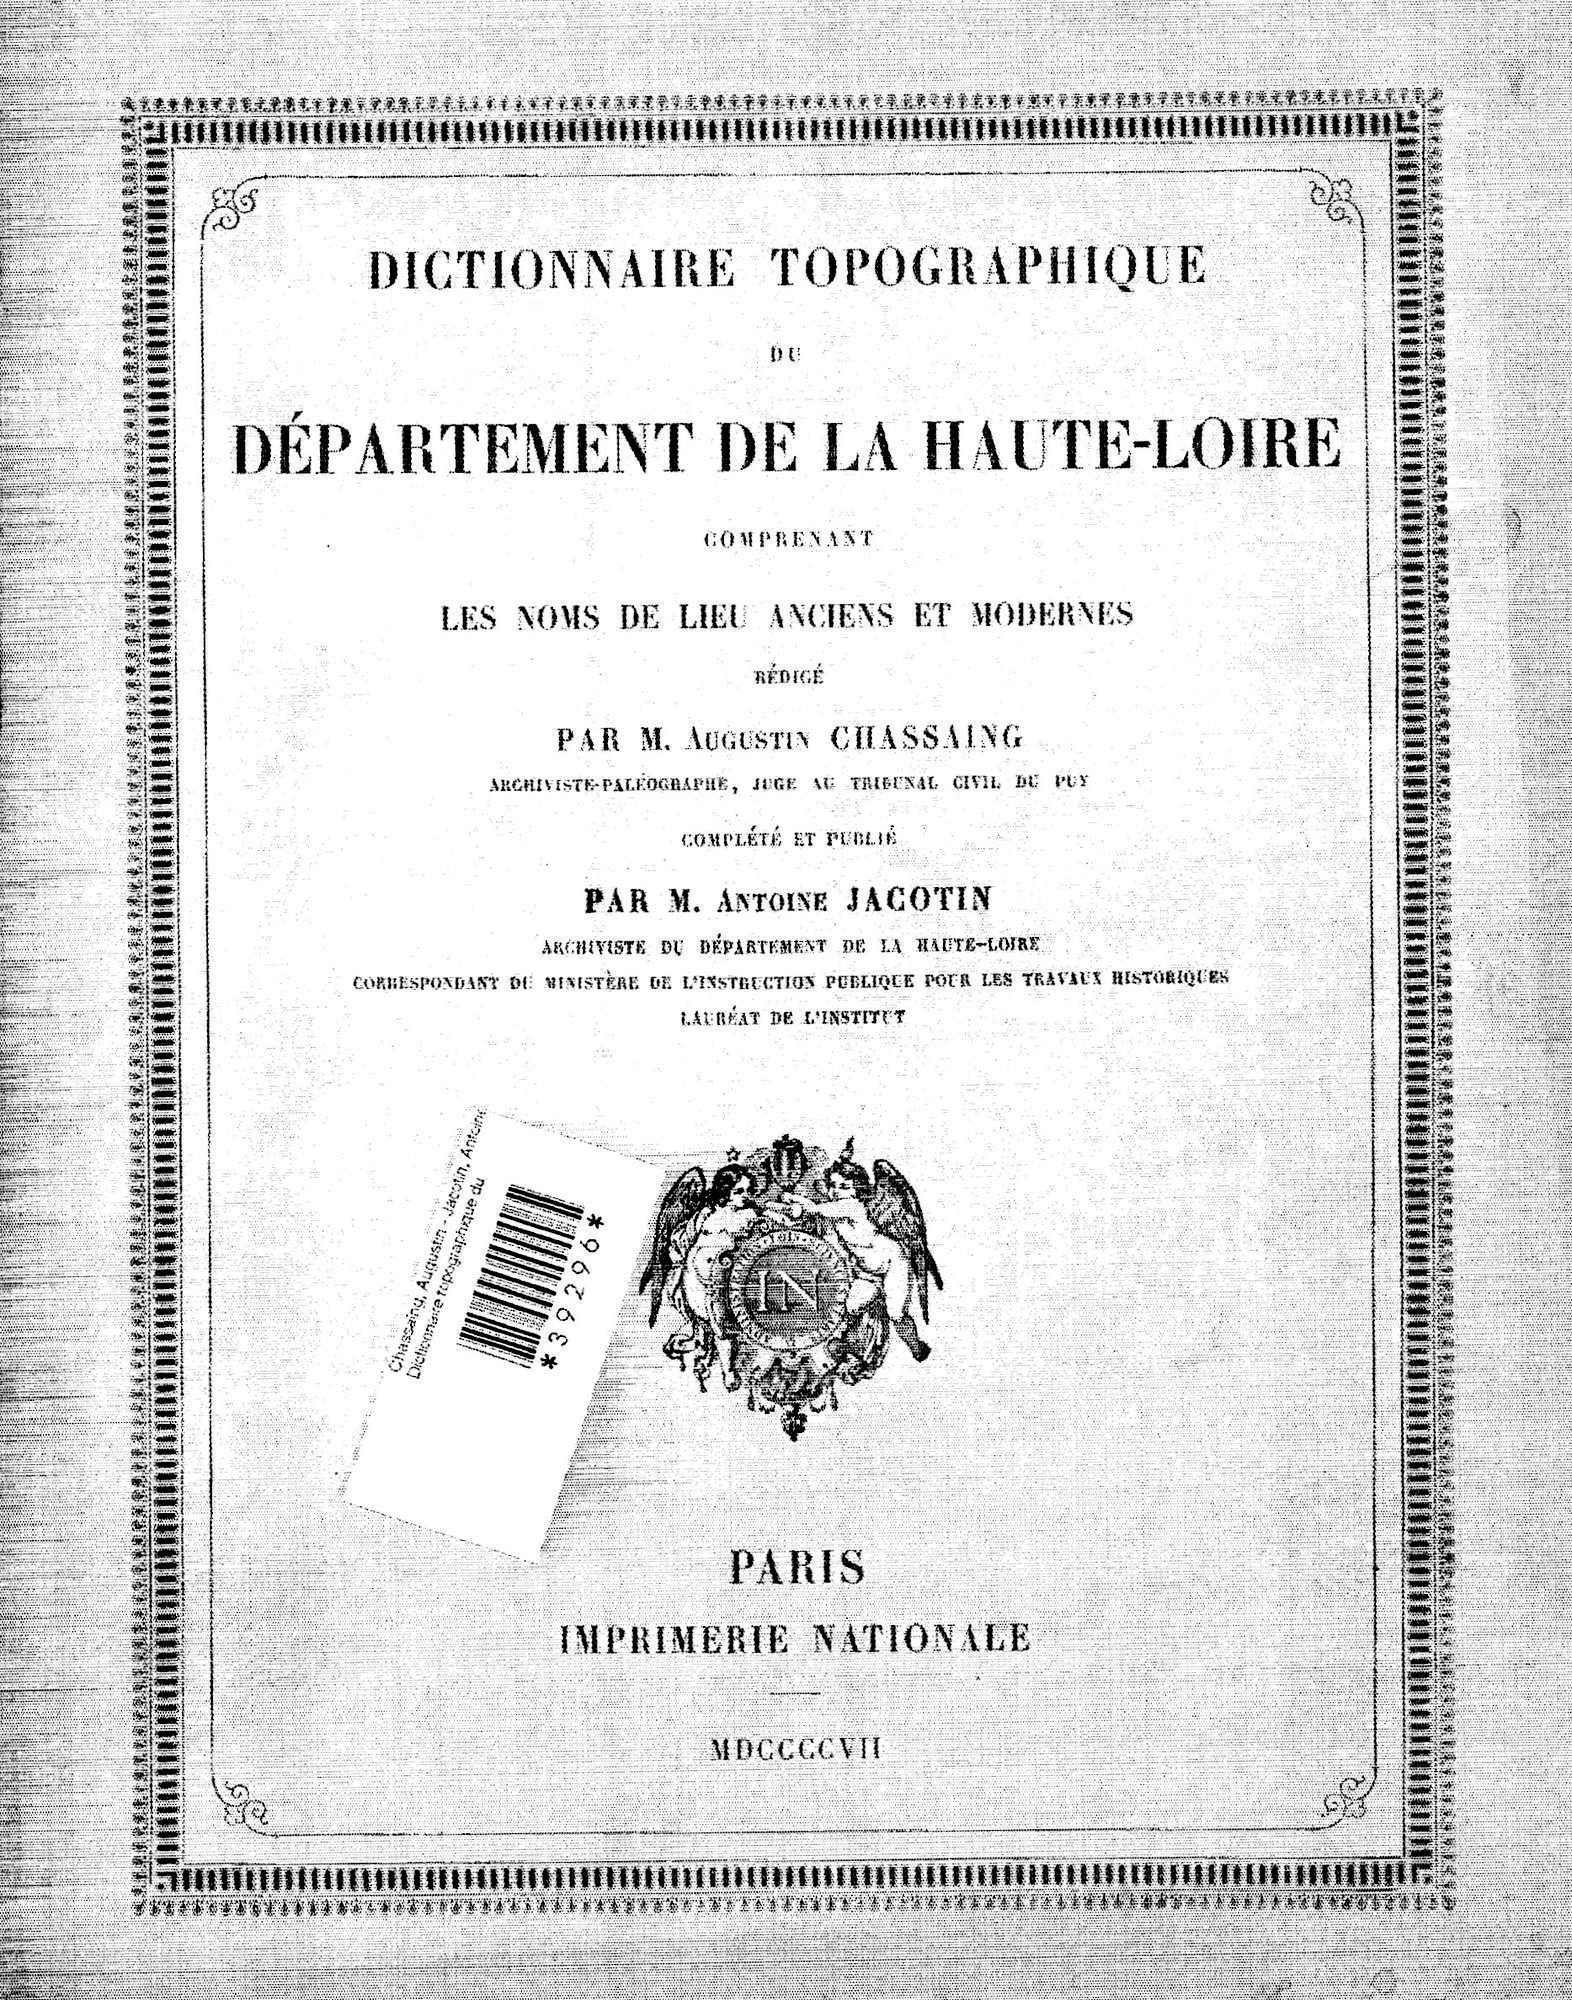 Archives départementales de la Haute-Loire. Dictionnaire topographique de la Haute-Loire, Chassaing et Jacotin, 1907 (US-C 10). 